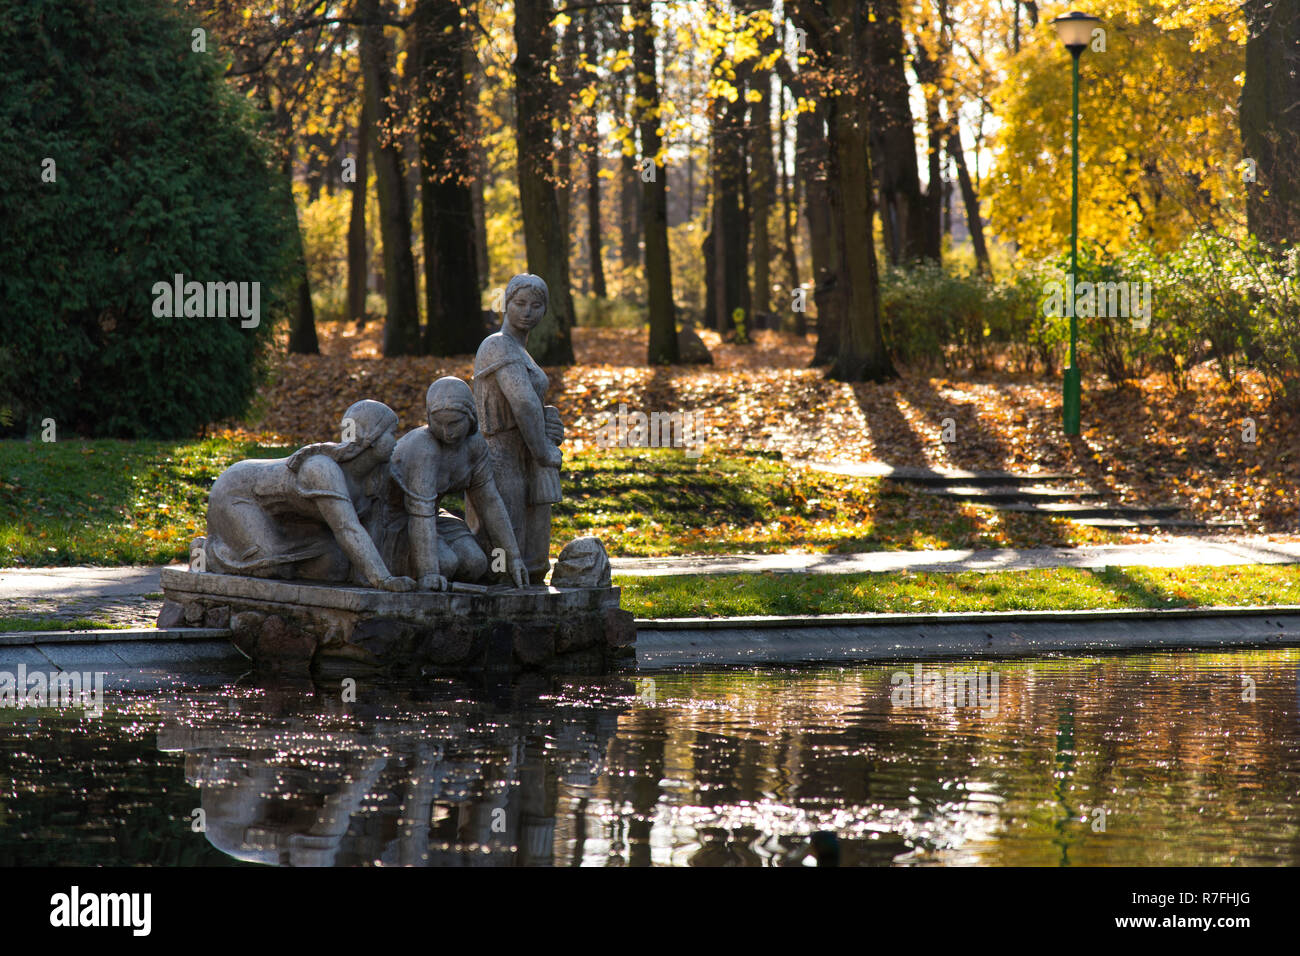 Sculpture d'une lavandière (Praczki) dans un parc de la ville de Bialystok, Pologne, automne Banque D'Images